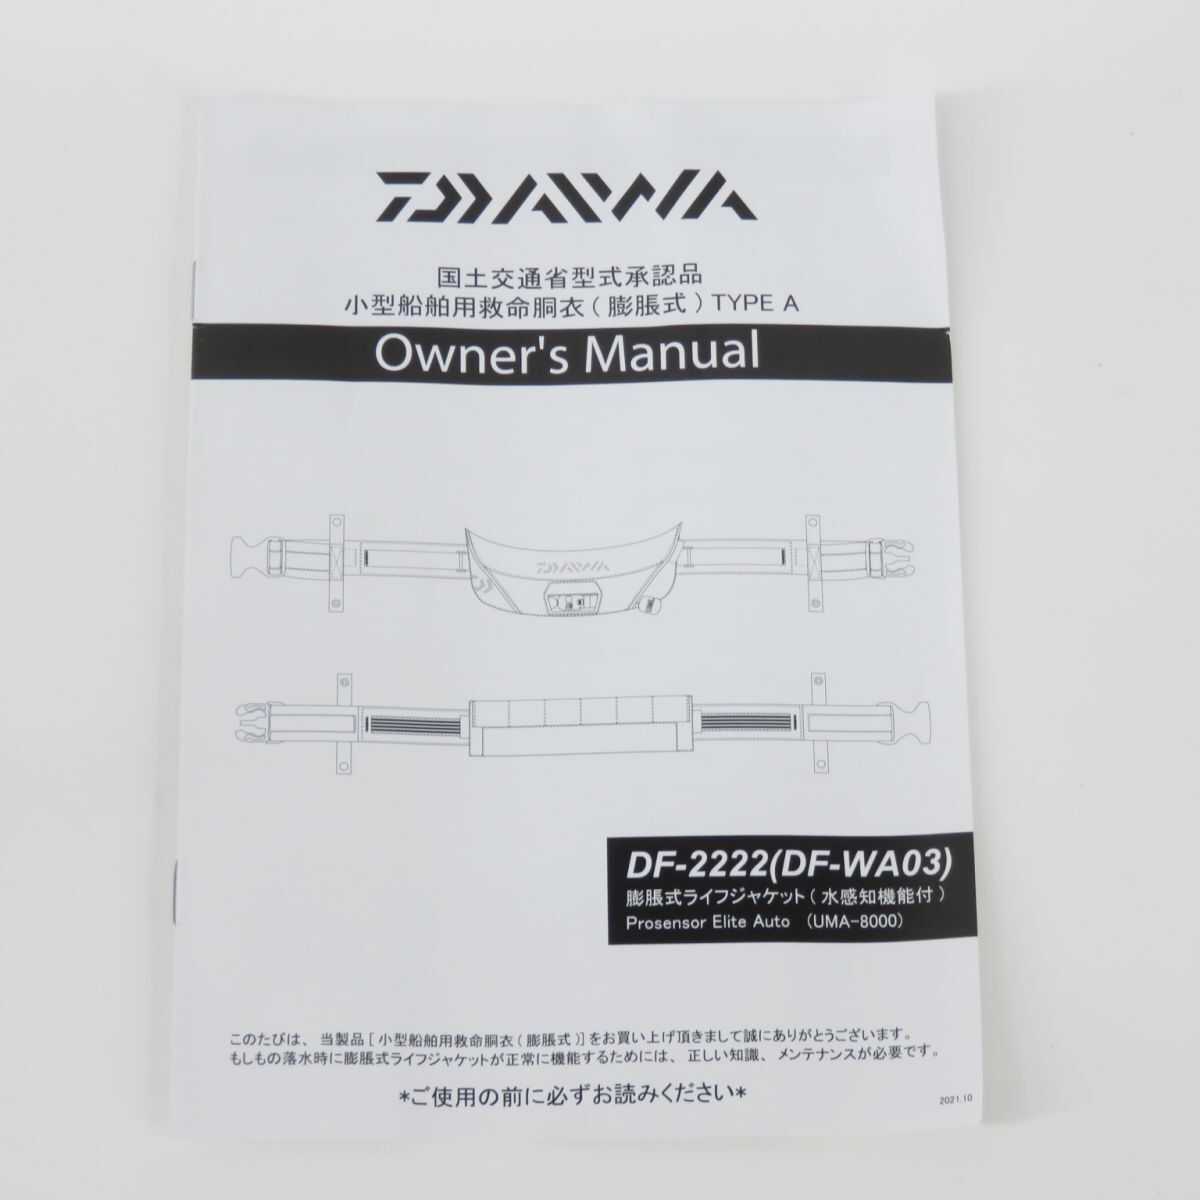 129 [ не использовался ]DAIWA Daiwa DF-2222 надувной спасательный жилет ( талия модель автоматика * ручной .. тип ) серый TYPE-A Sakura Mark 